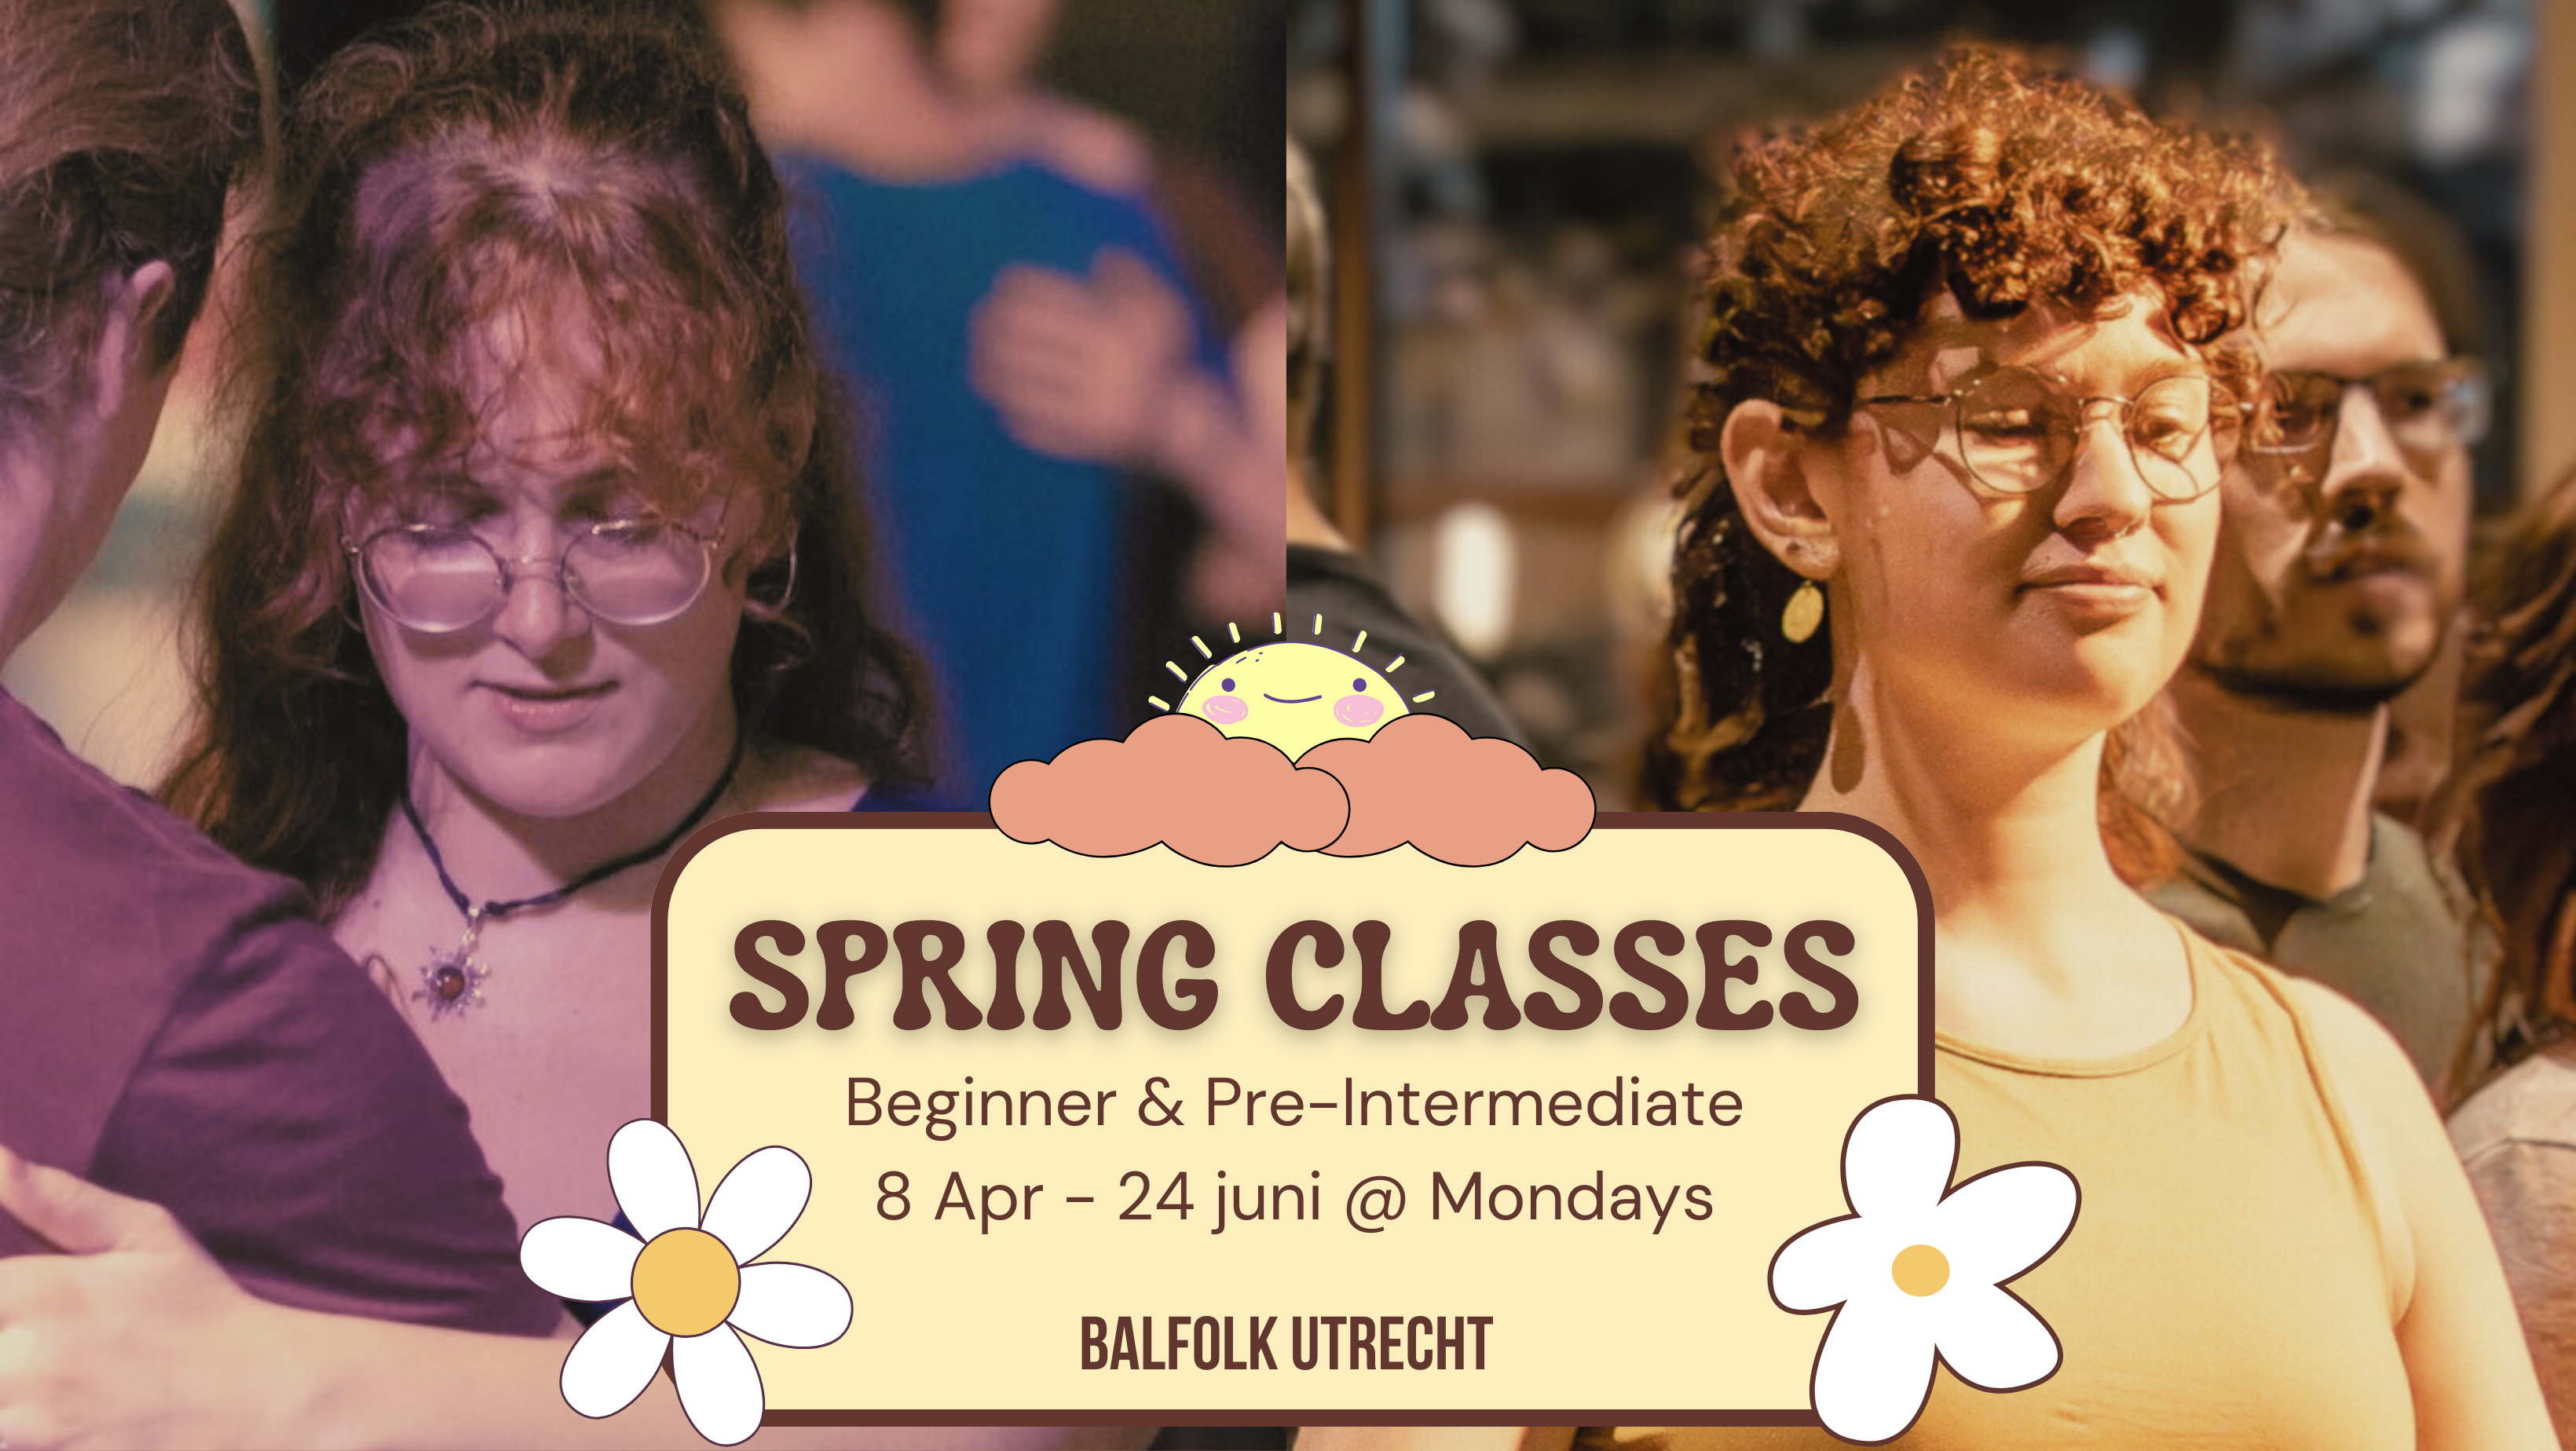 Proefles ðŸ‡³ðŸ‡±/ðŸ‡¬ðŸ‡§ - Balfolk Utrecht - Spring Classes